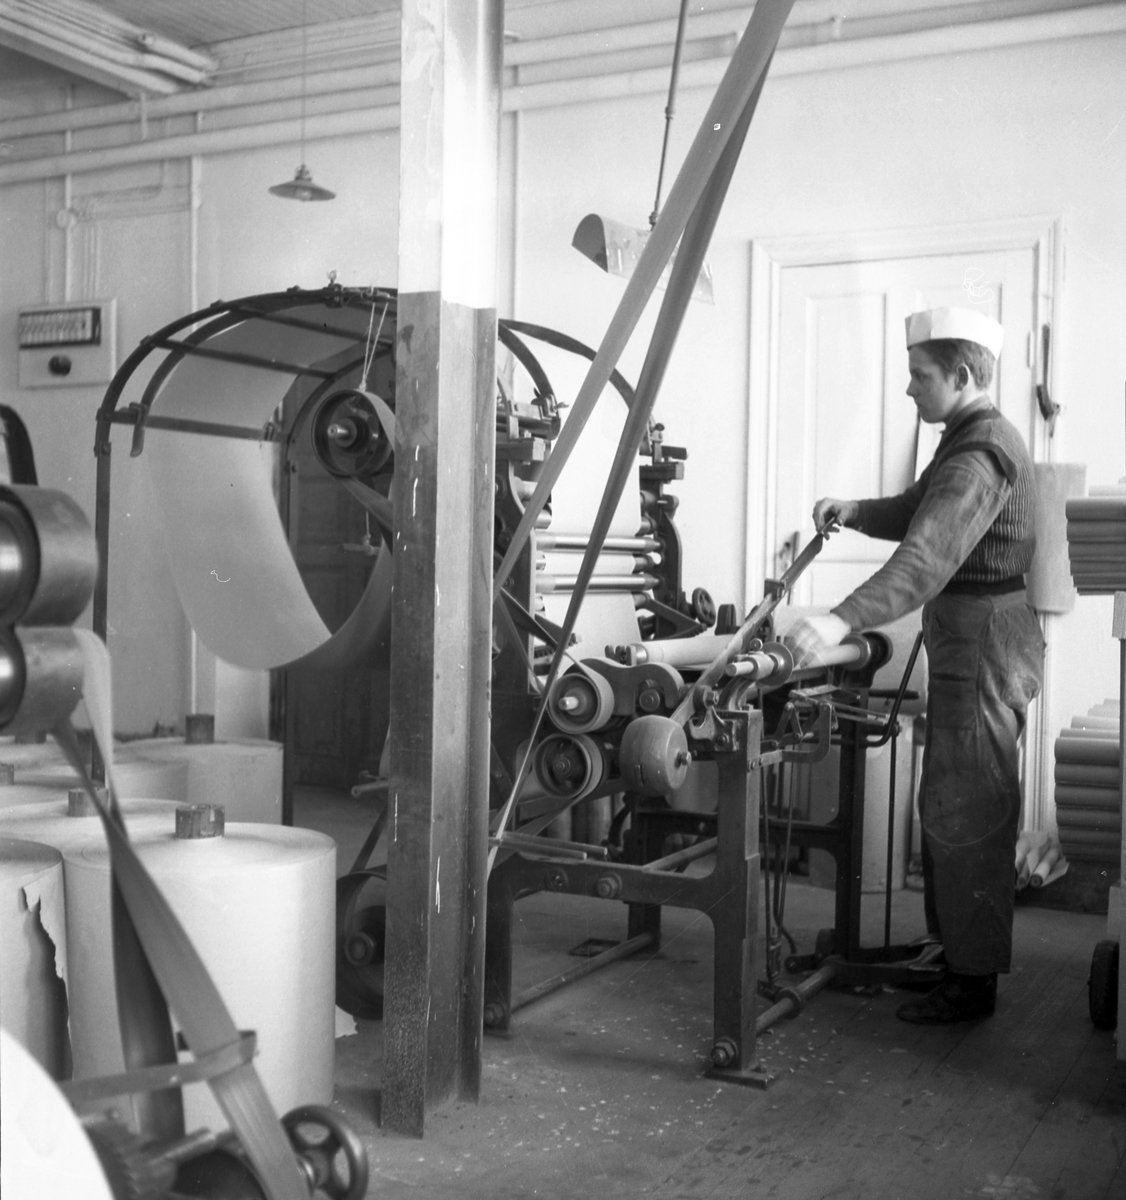 Durotapet AB. Interiör av fabriken. 1937

